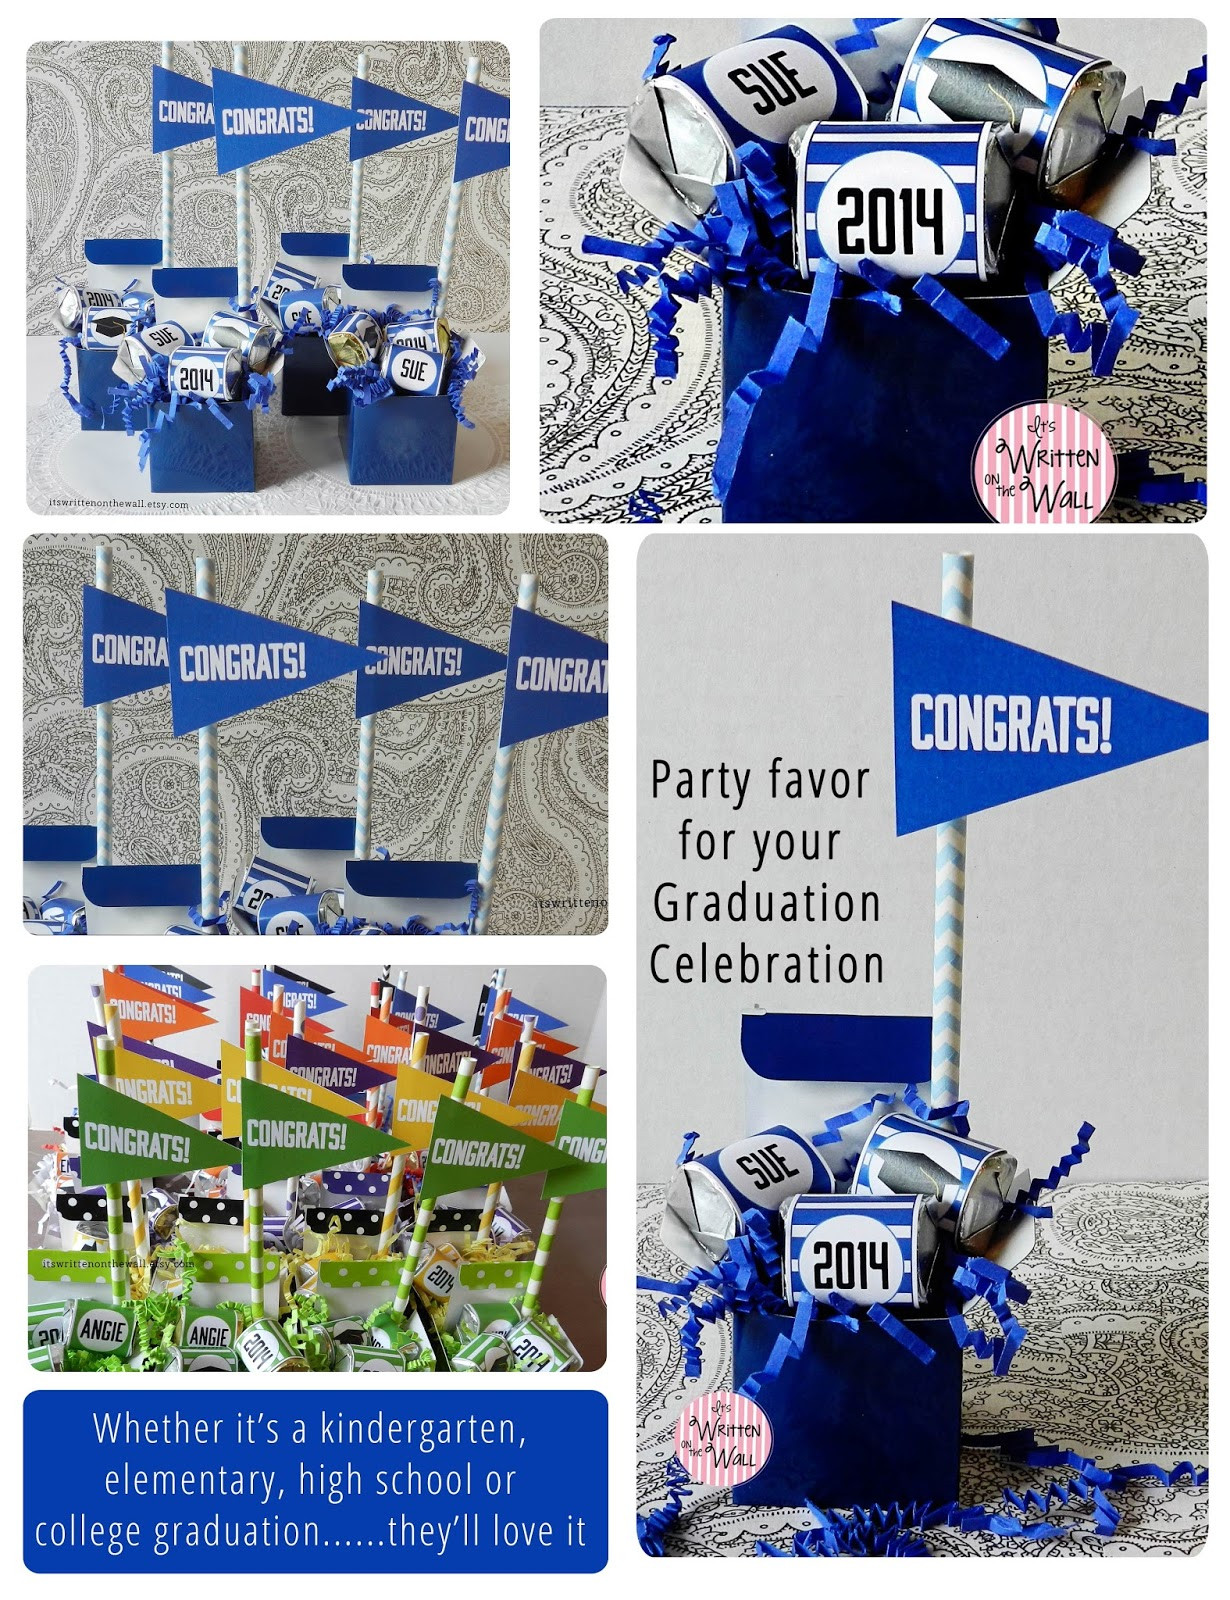 Graduation Party Souvenirs Ideas
 Ideas for Graduation Parties Personalized Party Favors